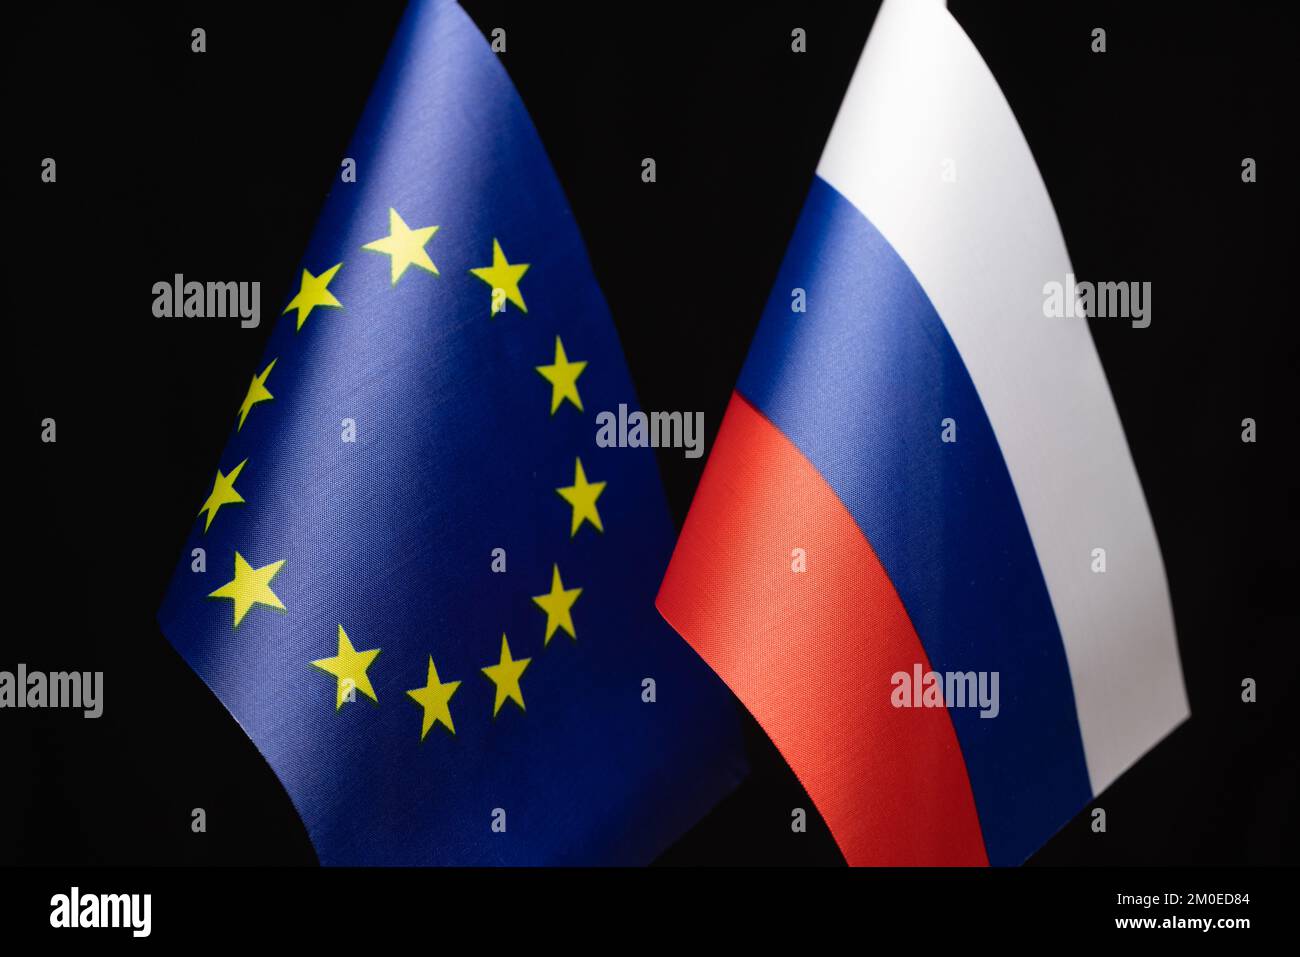 Drapeaux de l'Union européenne et de la Russie, concept de relations entre les deux entités, conflit et négociations Banque D'Images